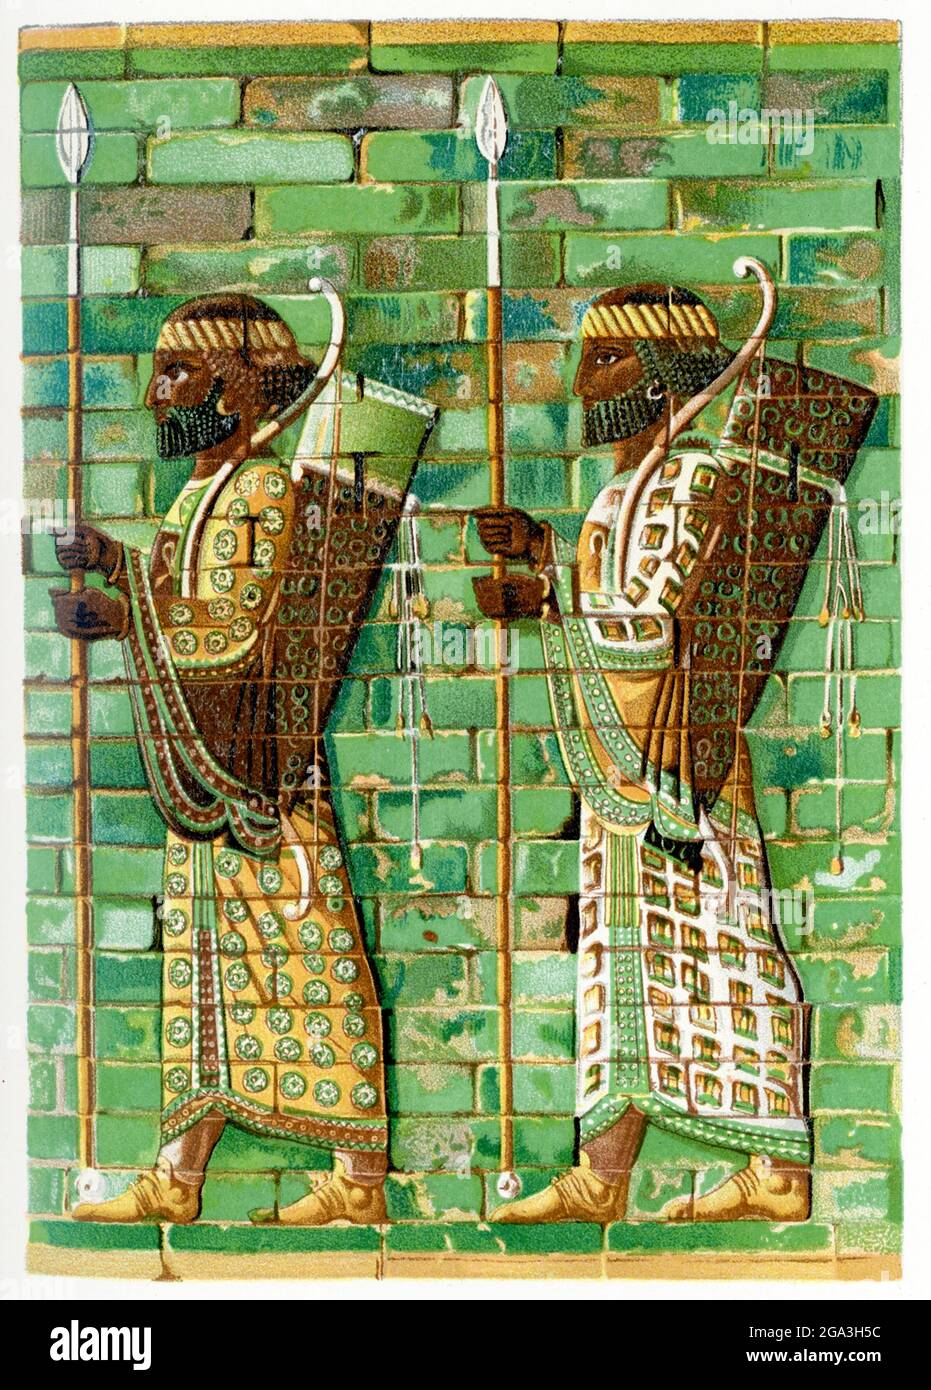 Cette illustration de 1903 montre une frise d'archers à Susa. Ici, une partie de la frise de relief en carreaux de couleur vitrifiée de la salle d'audience (connue sous le nom d'apadana) du palais royal de Susa (dans l'Iran actuel). Les figures représentent des membres du puissant garde-corps royal d'un roi persan autour de 400 av. J.-C. , le temps de Darius I, qui a envahi la Grèce et a commencé ce qui est connu aujourd'hui comme les guerres perses (les Grecs étant les vainqueurs). Darius J'ai construit le palais. Ce secours est maintenant logé au Louvre à Paris, en France. Banque D'Images